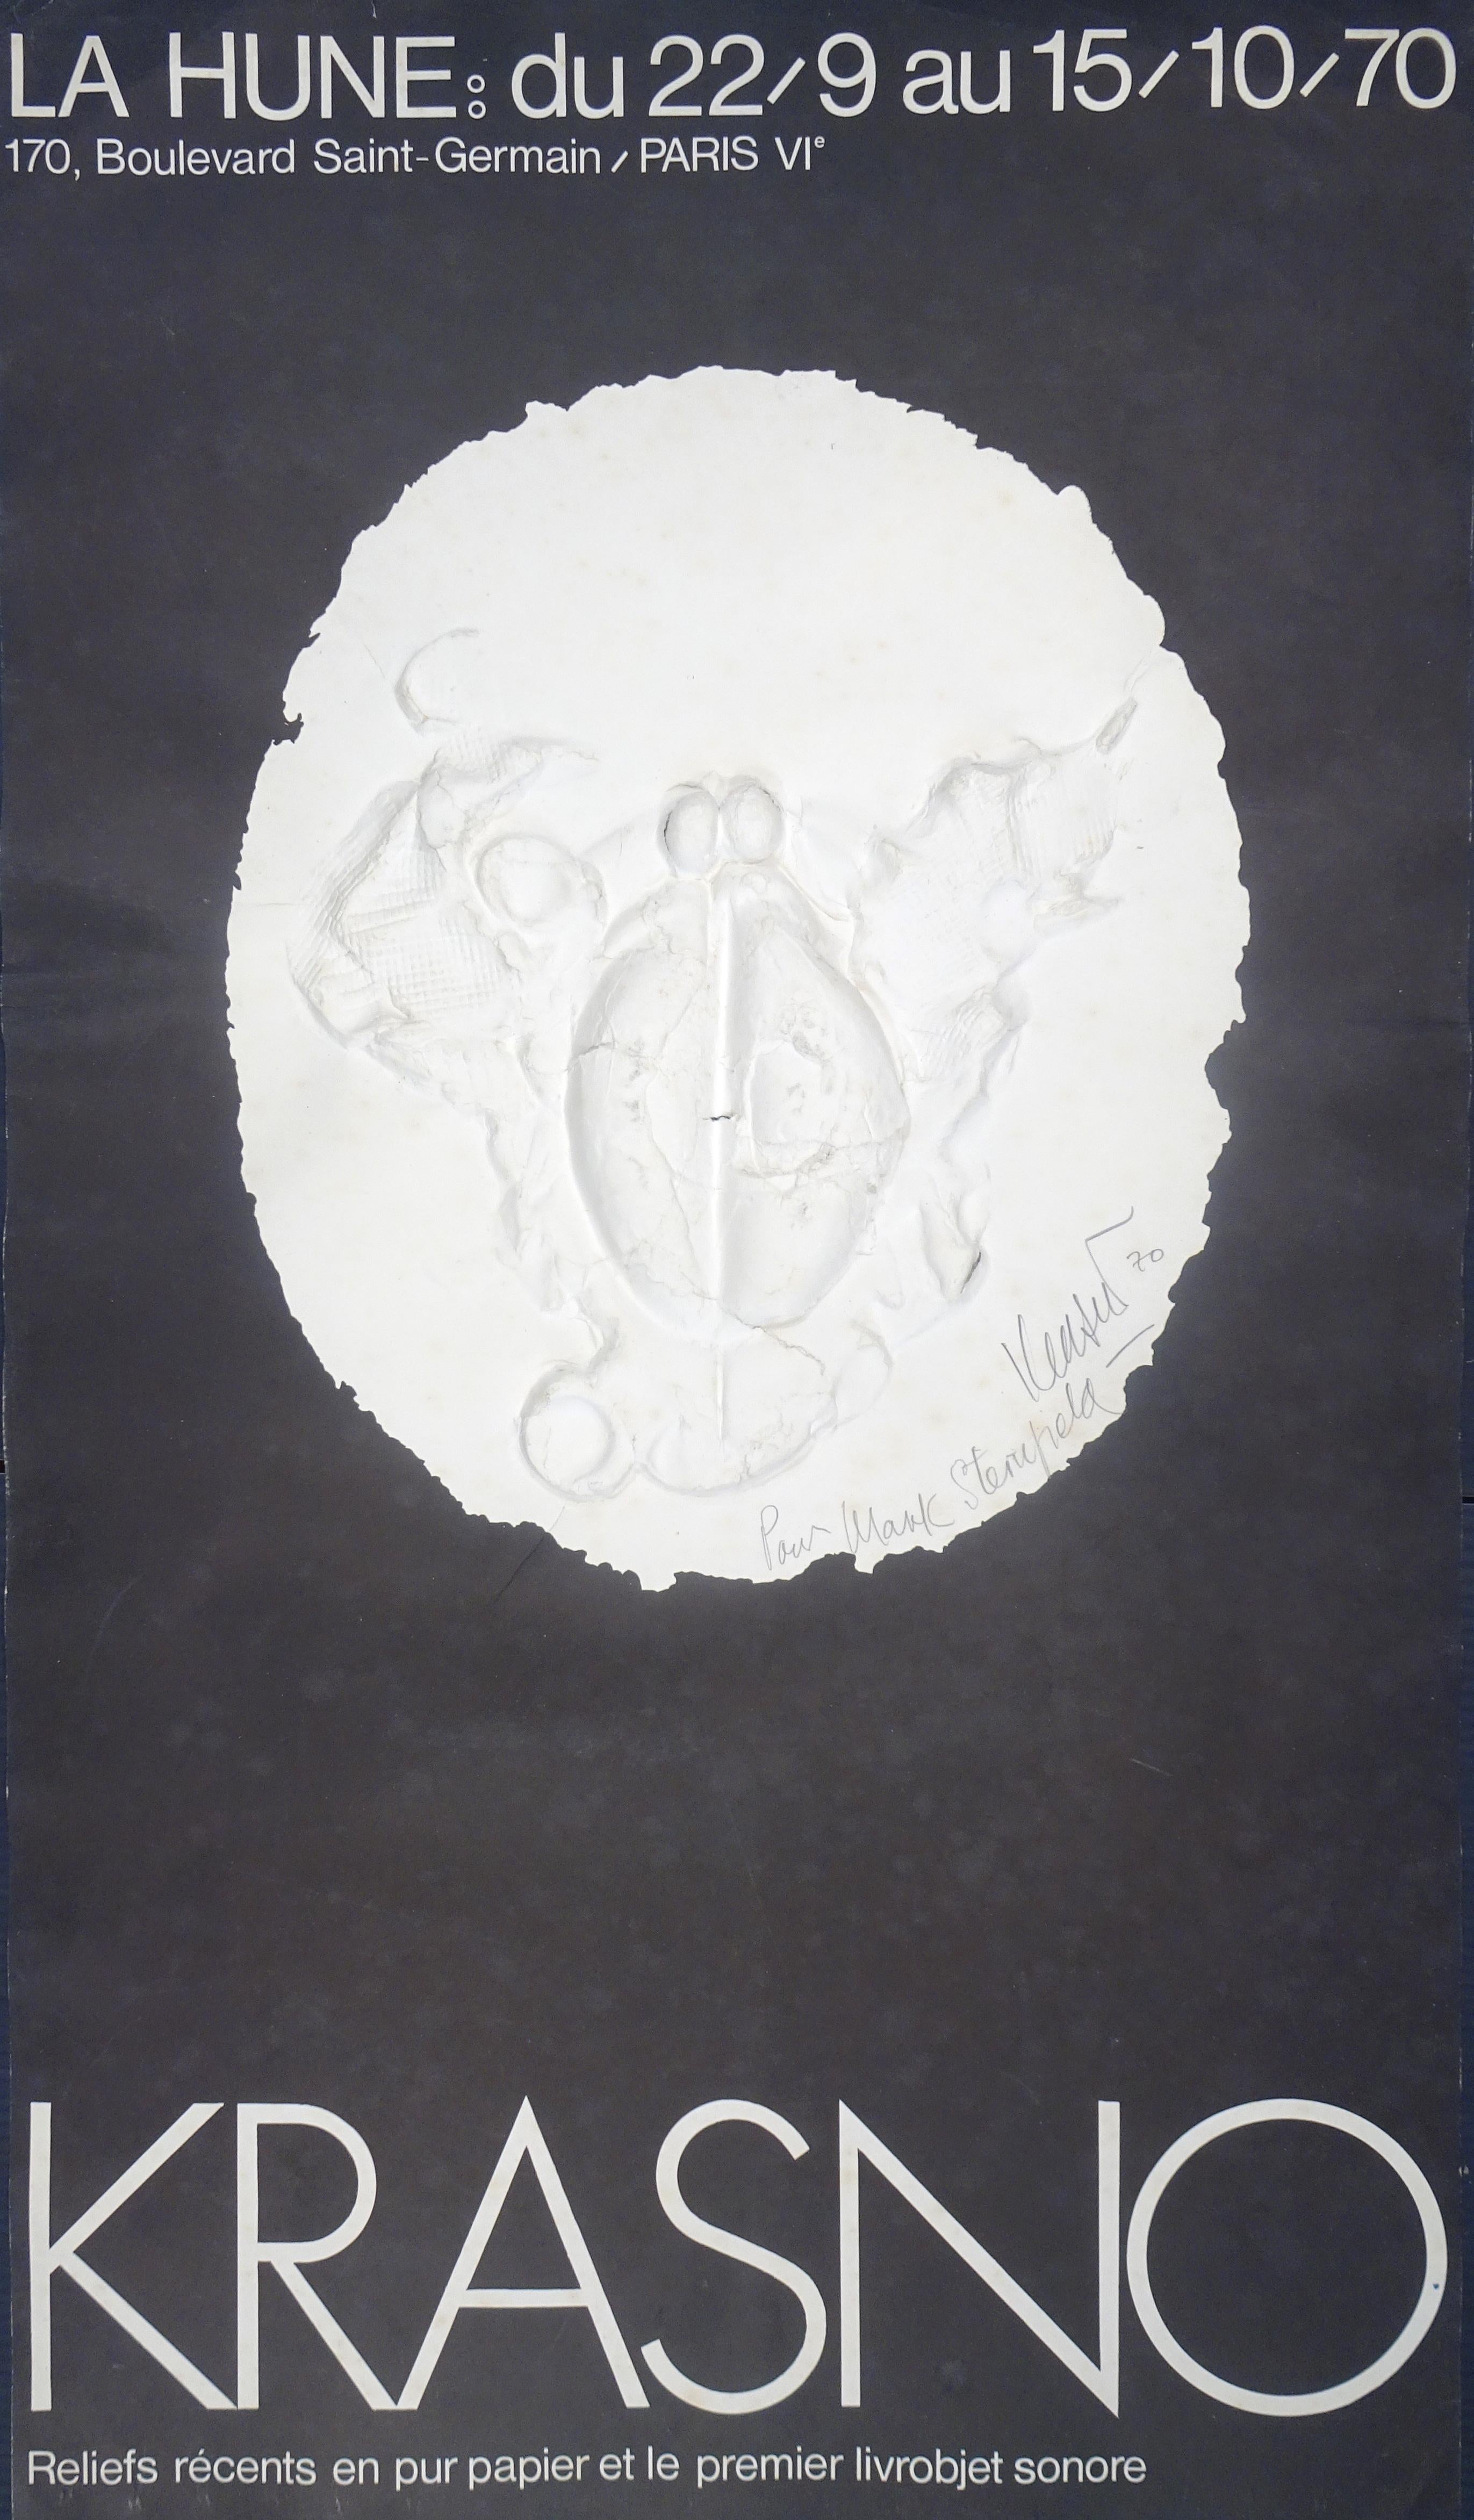 Krasno Exhibition ist ein Originalkunstwerk aus dem Jahr 1970.

Original-Affiche für die Krasno-Ausstellung im La Hune in Paris.

Rechts unten mit Bleistift handsigniert und datiert "Krasno 70". Handschriftlich mit Bleistift "Pour Mark